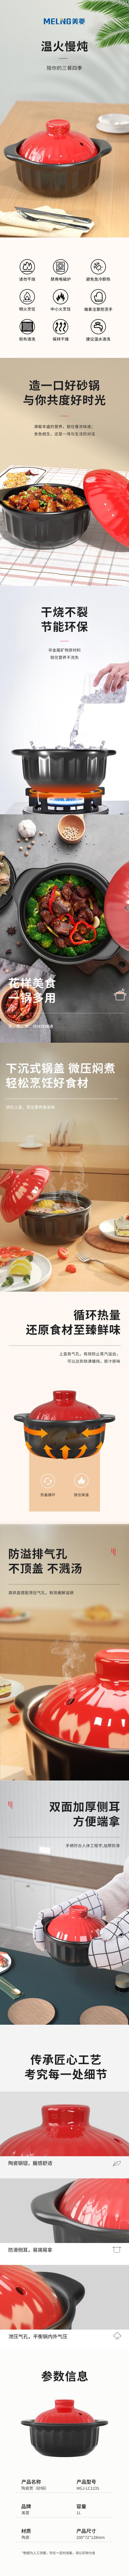 南门网 广告 海报 电商 砂锅 详情页 长图 促销 专题